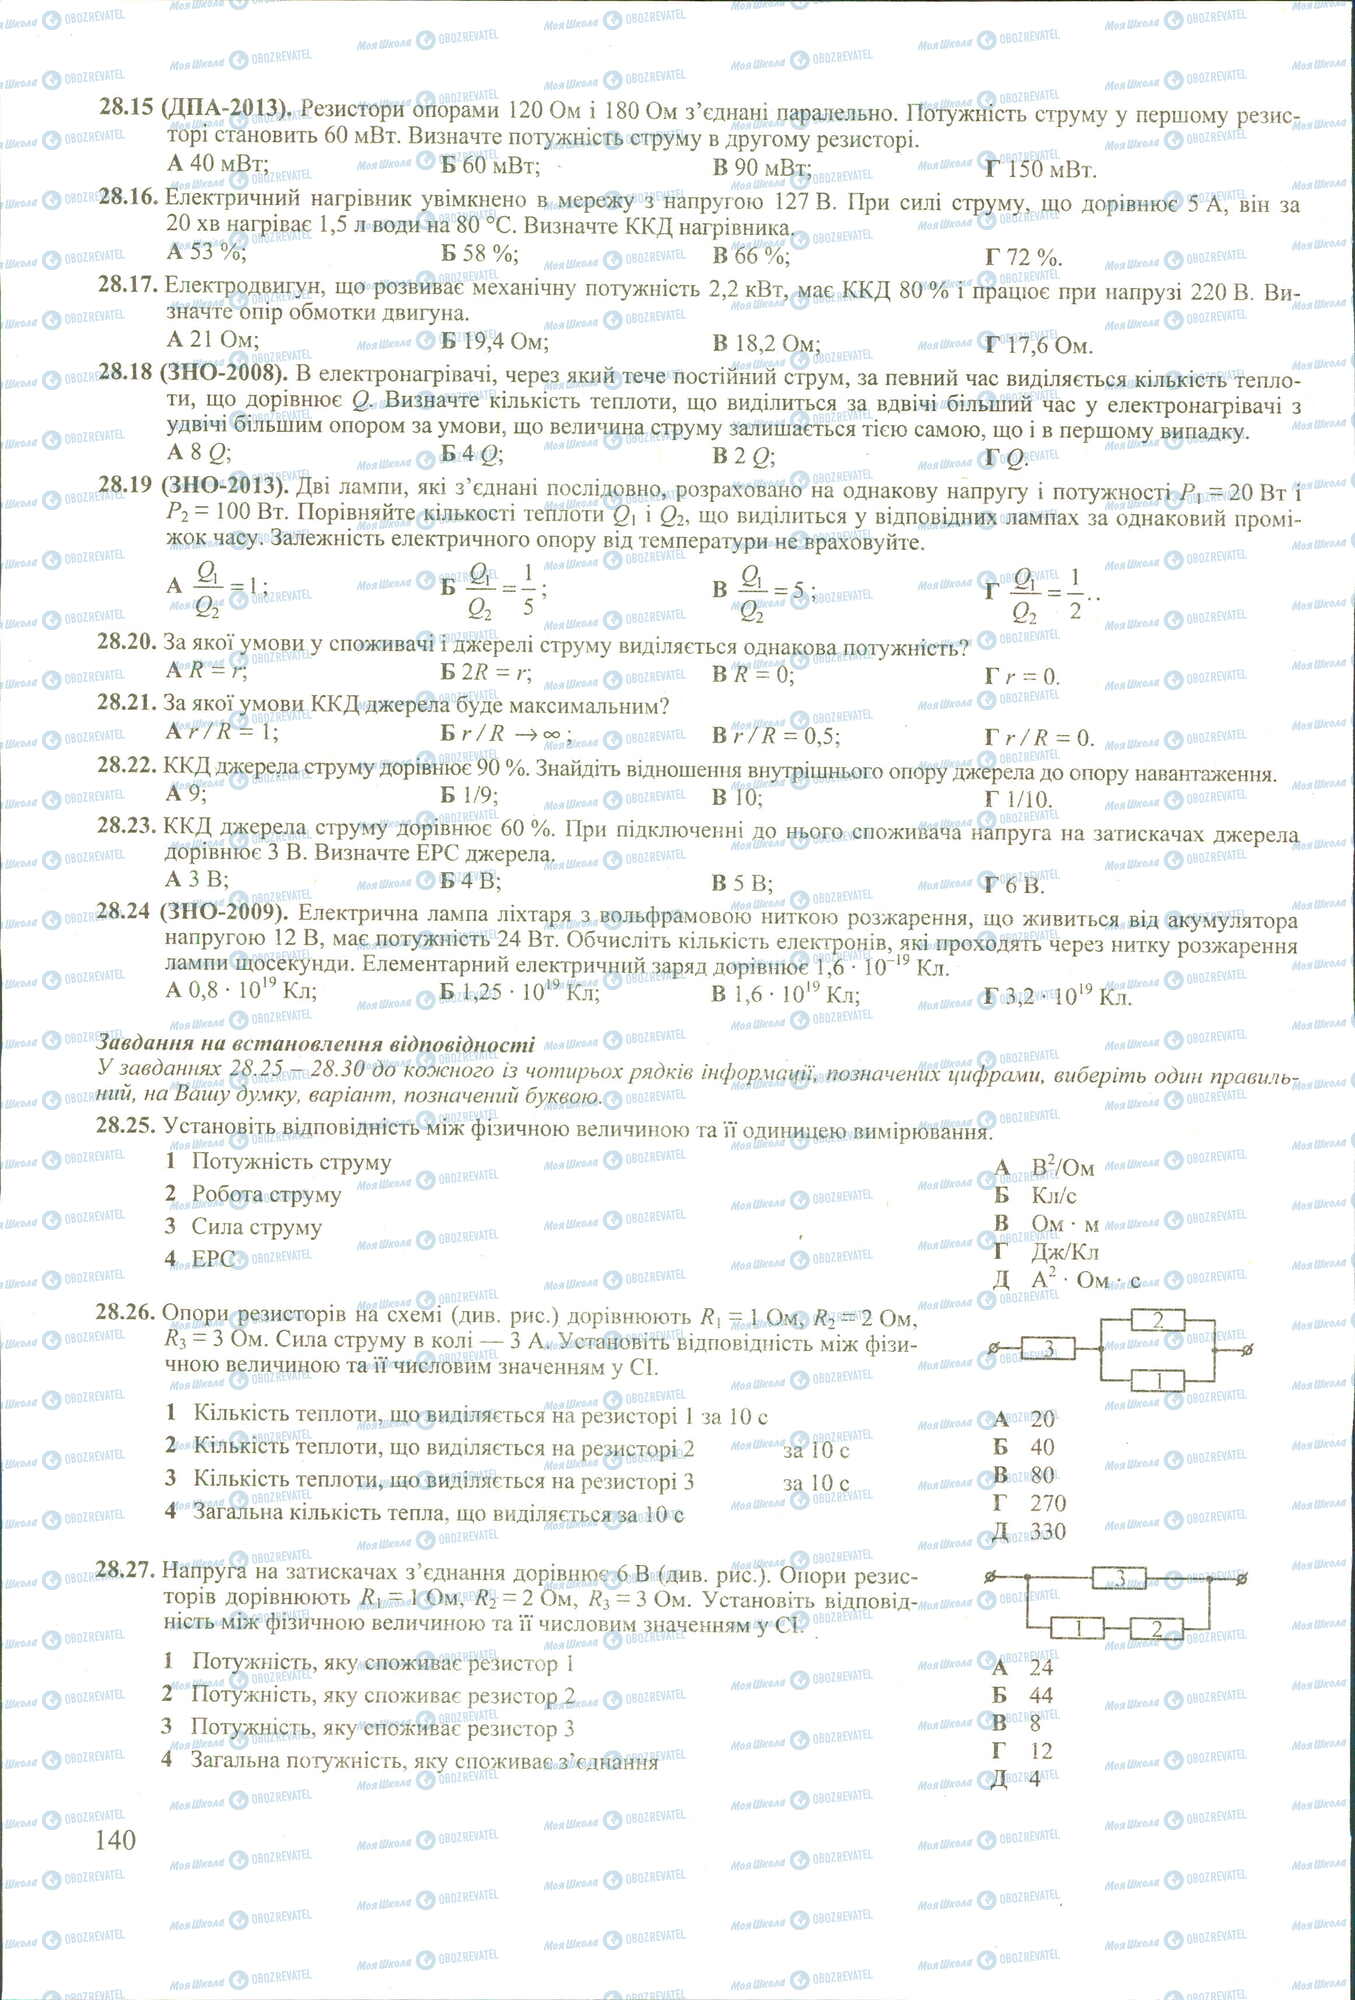 ЗНО Физика 11 класс страница 15-27